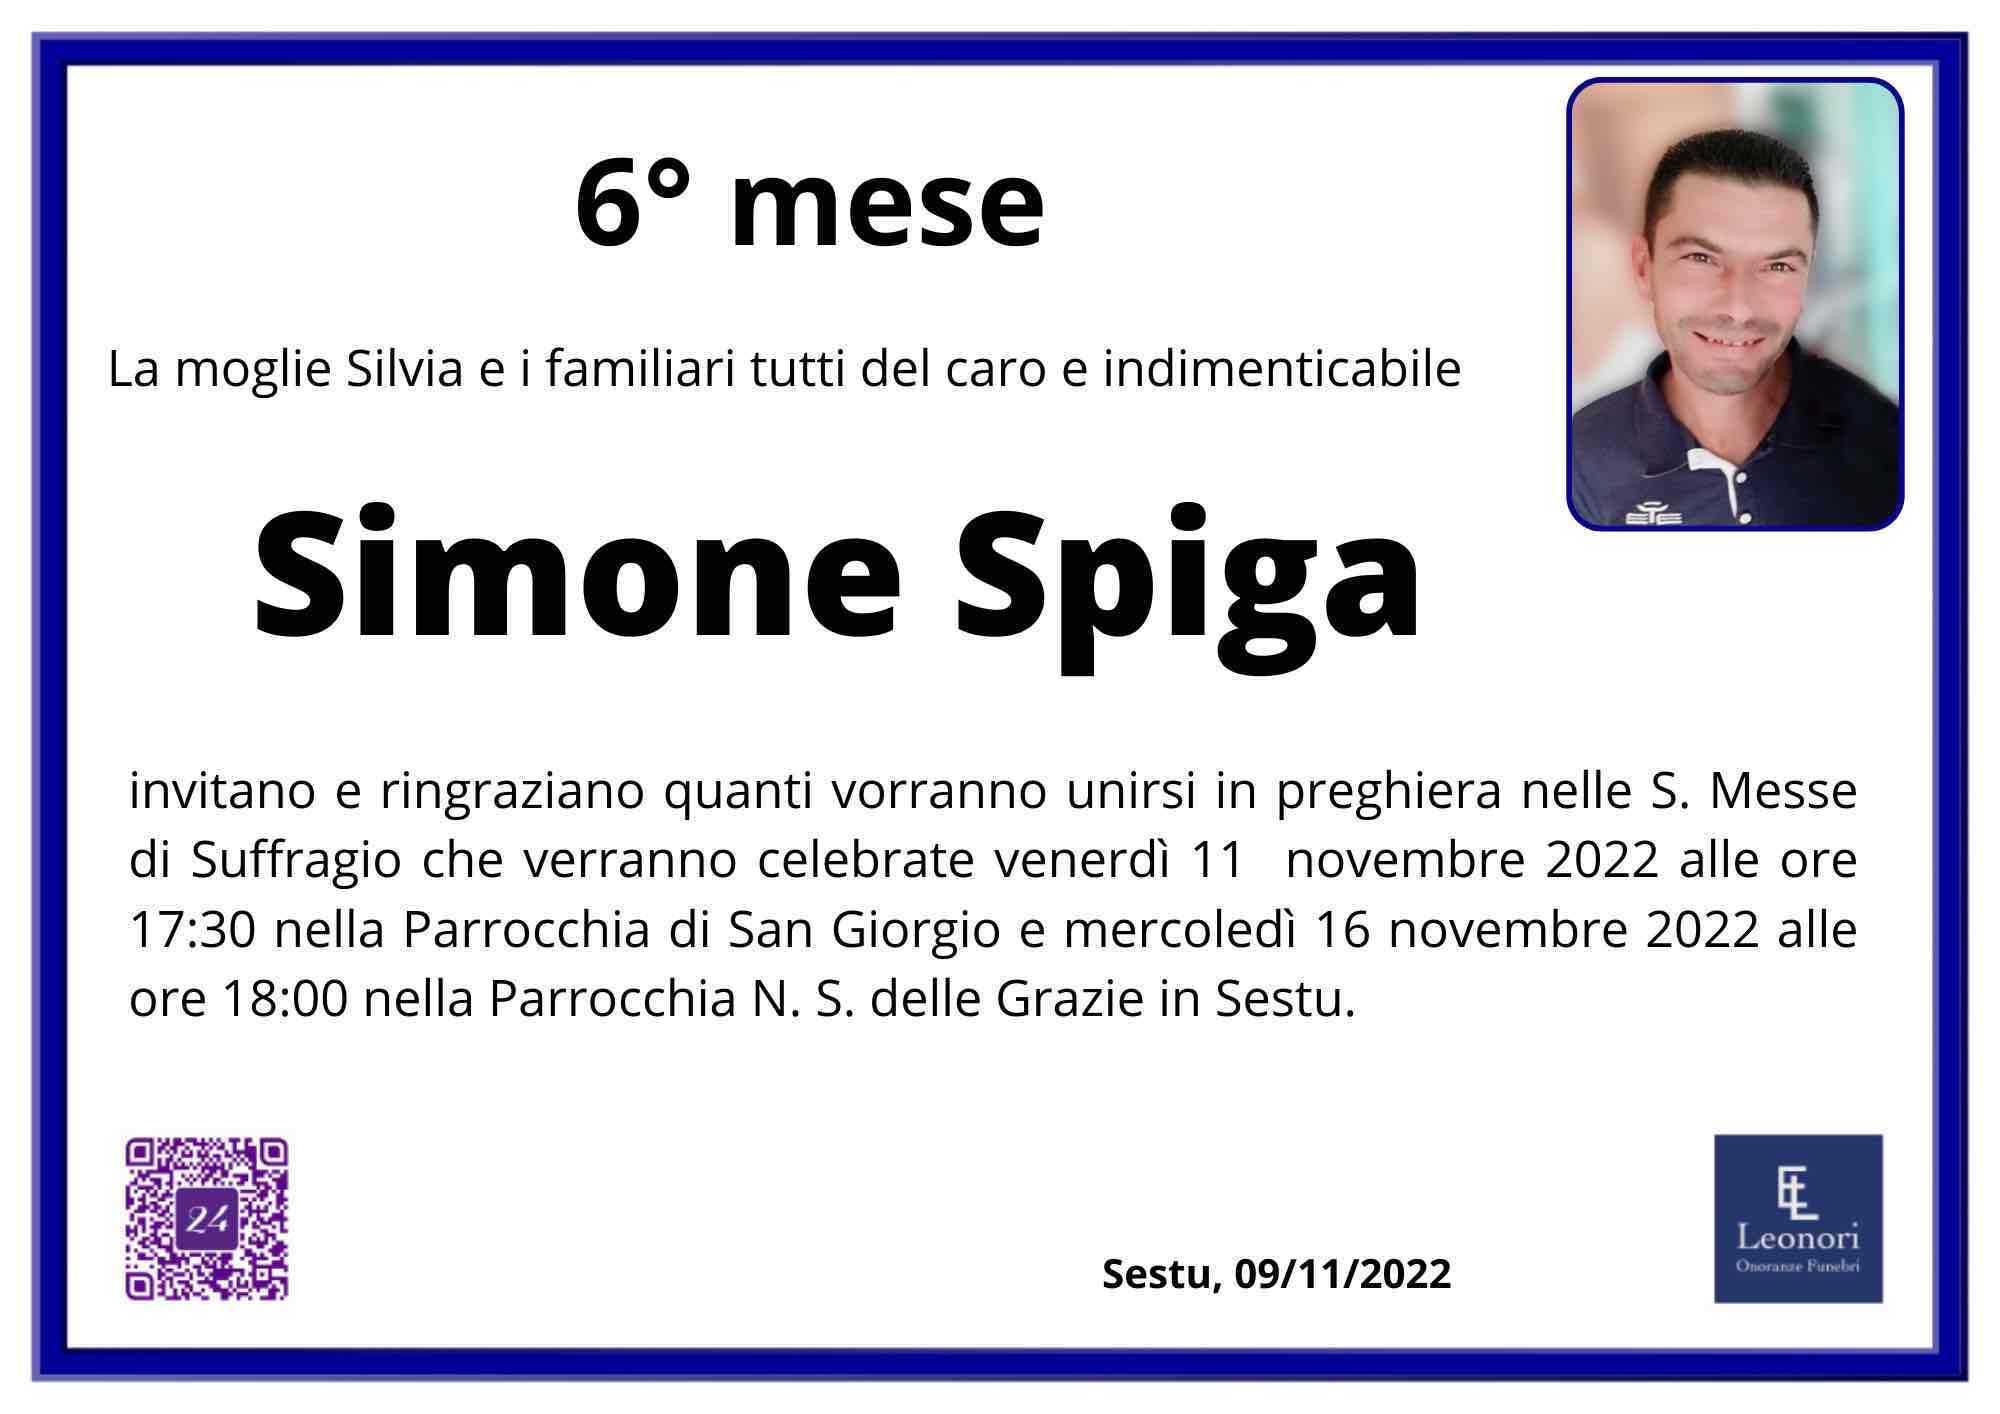 Simone Spiga